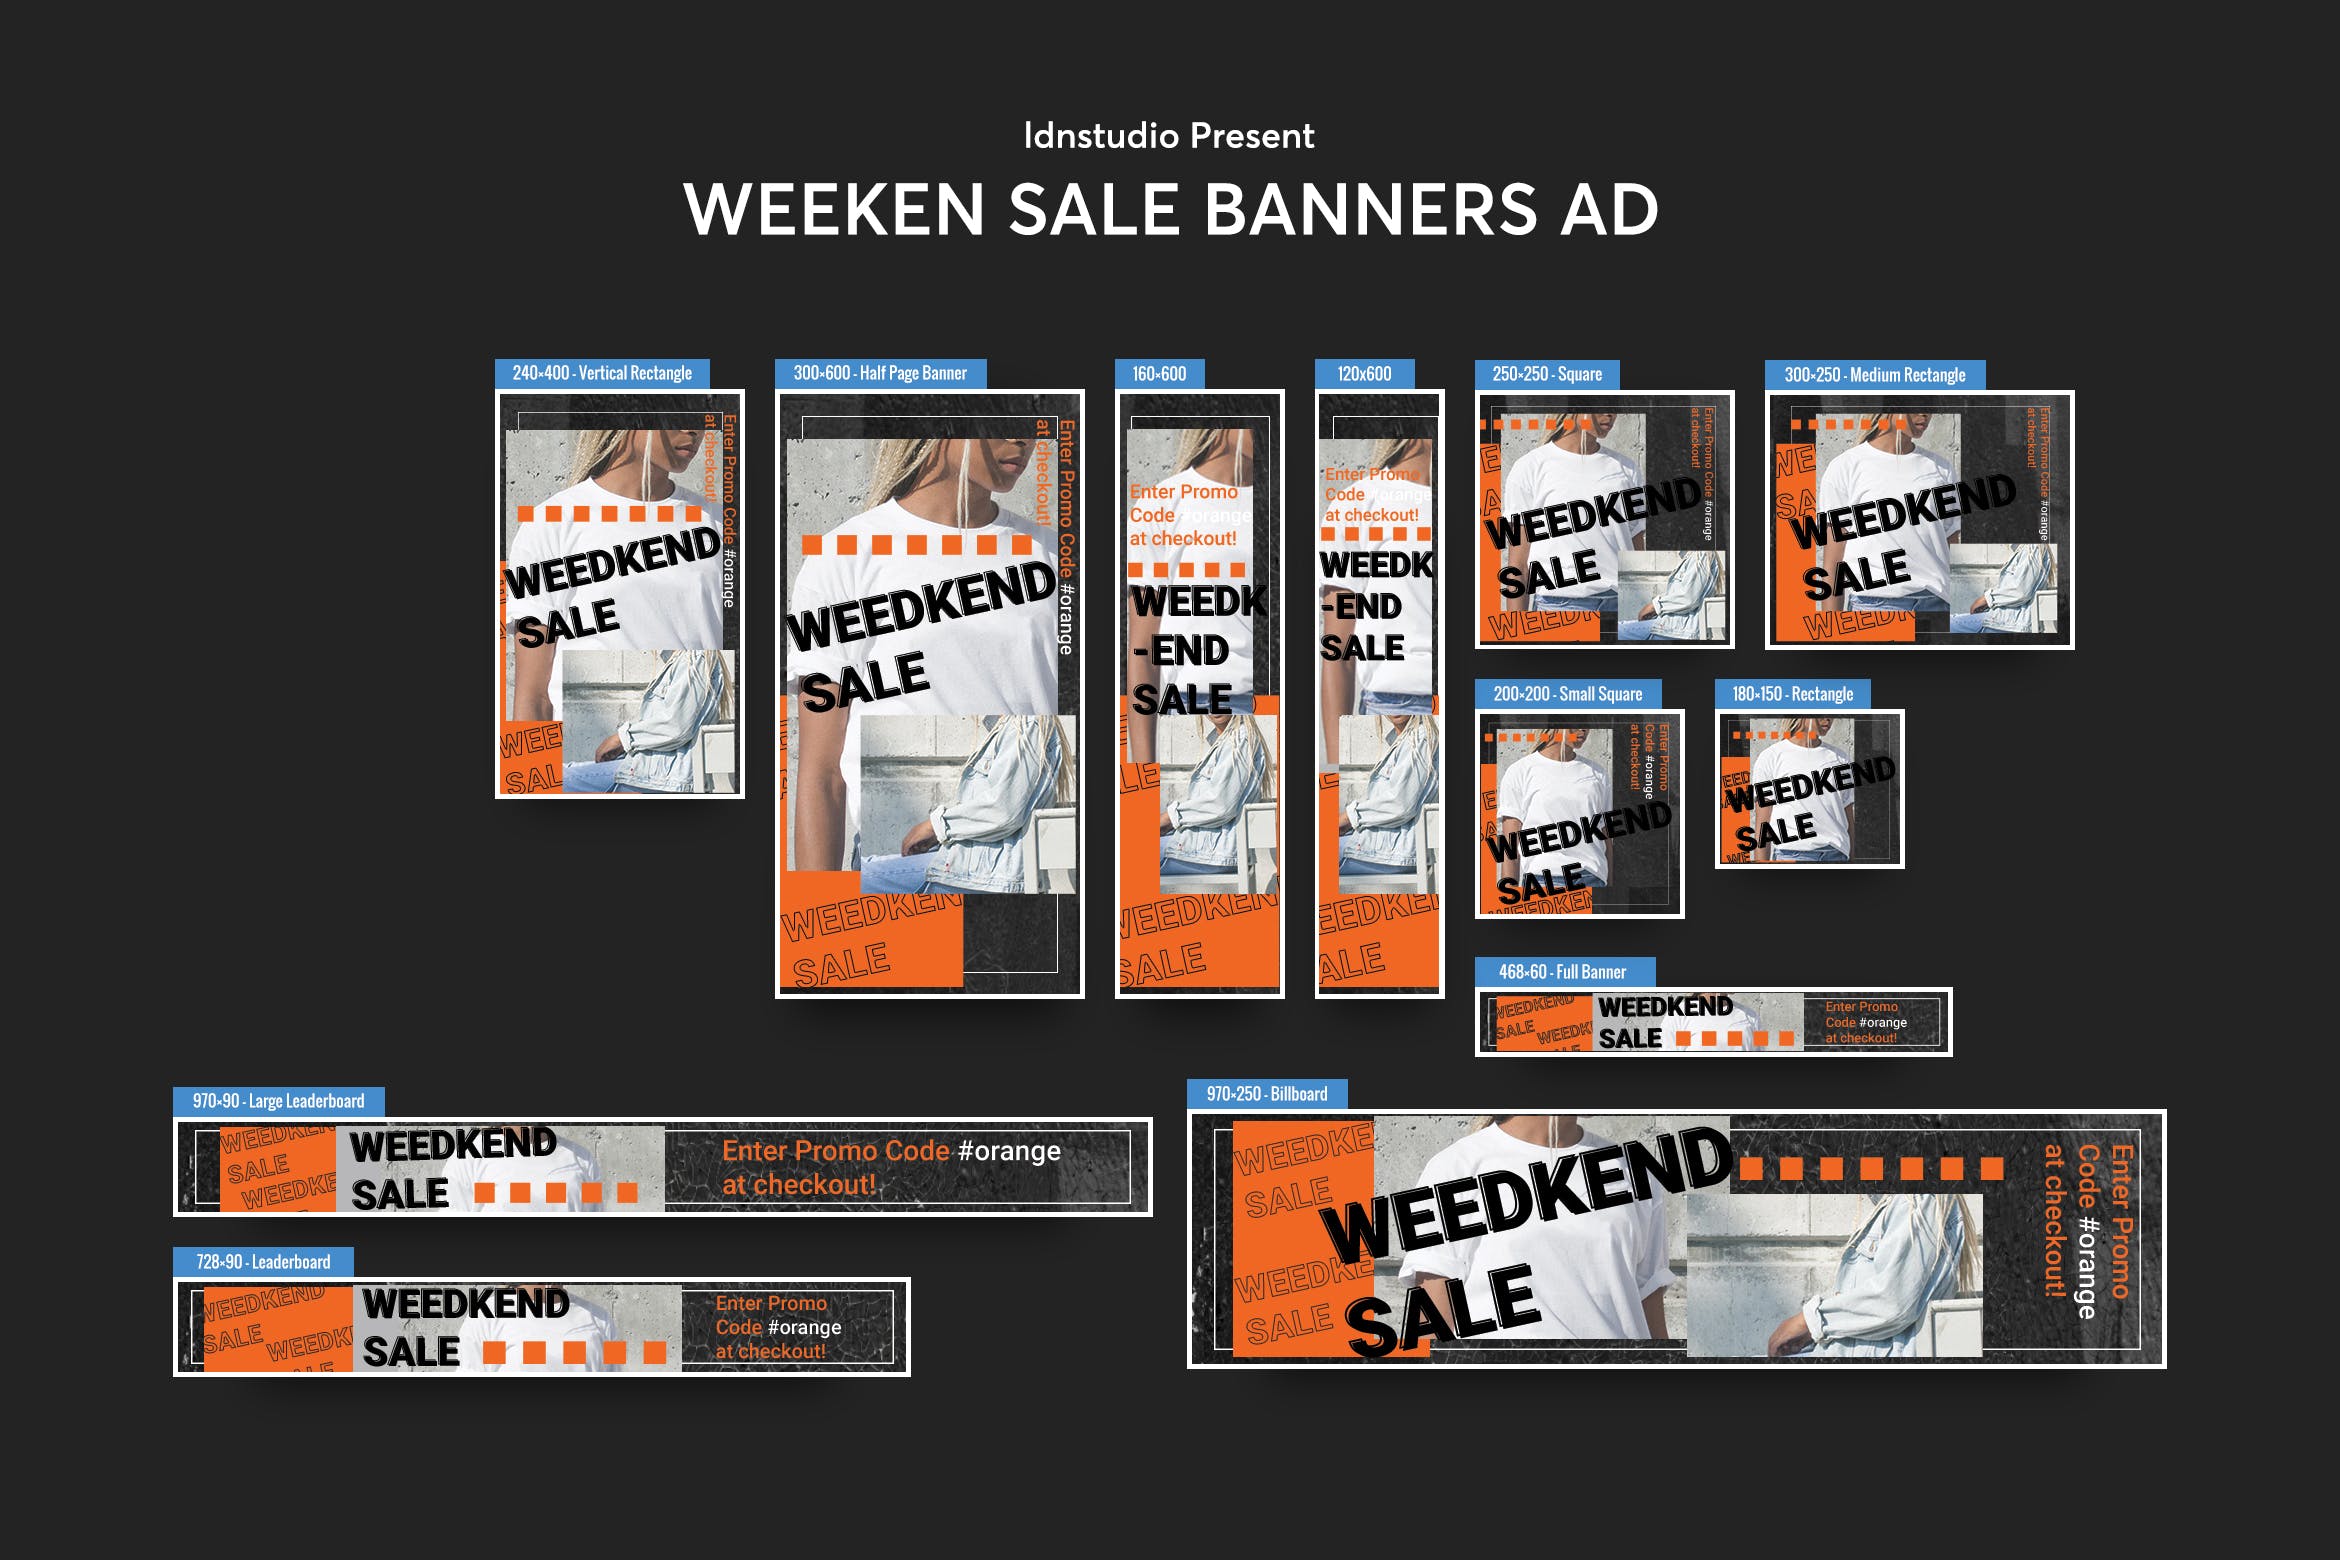 周末促销活动主题网站Banner横幅非凡图库精选广告模板 Weeken Sale Banners Ad PSD Template插图